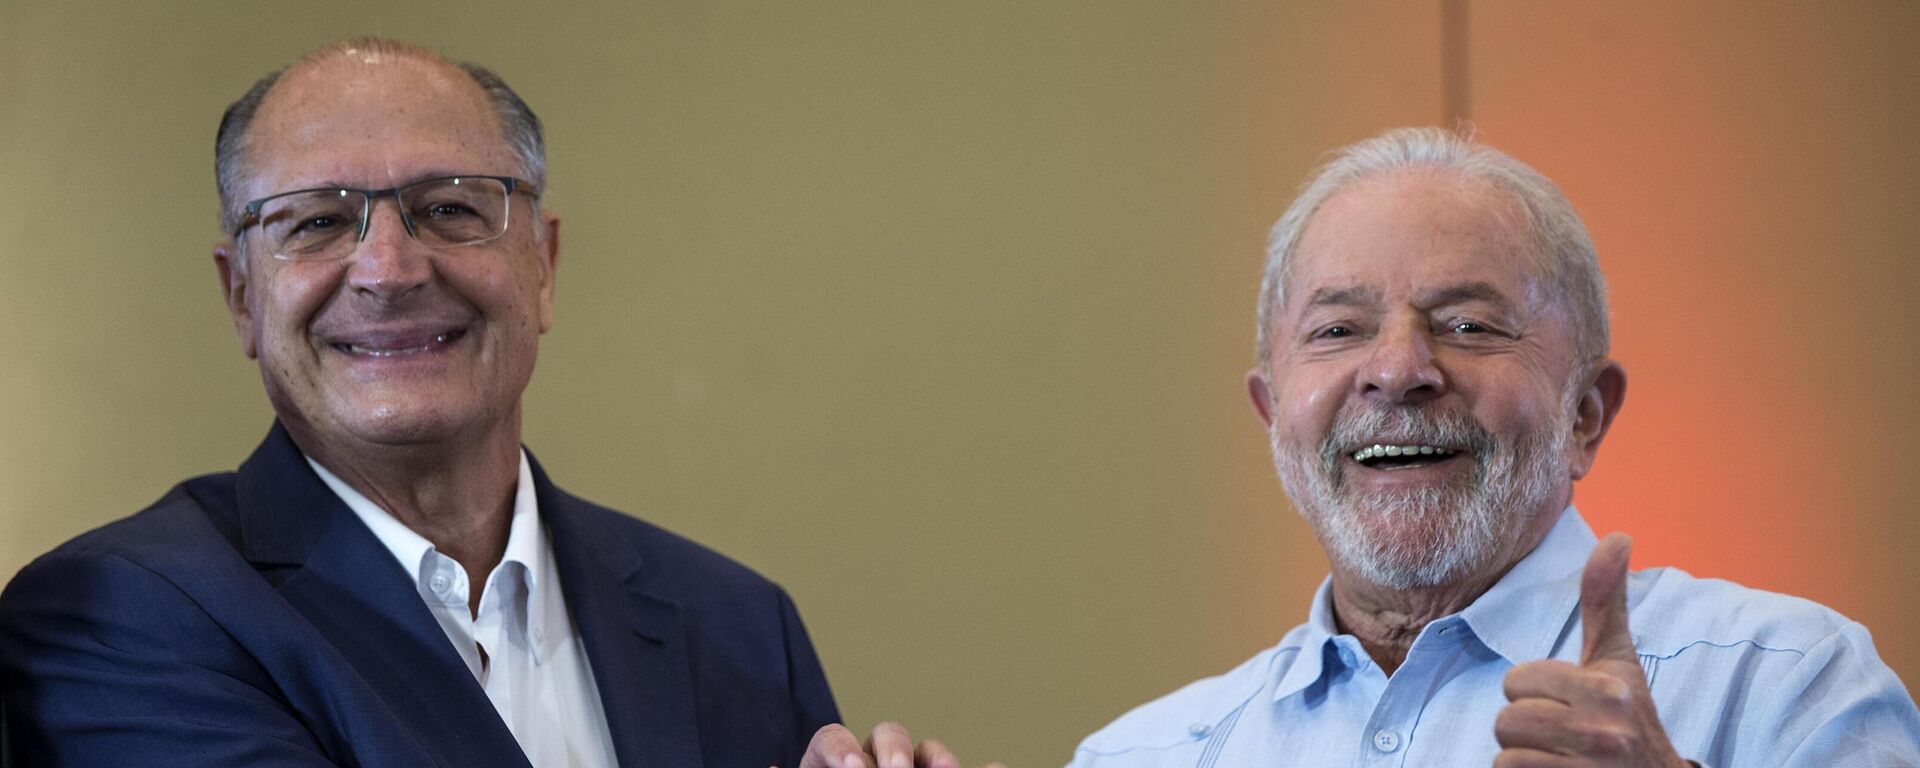 Geraldo Alckmin (PSB) é oficializado como vice-presidente na chapa de Lula (PT) para as eleições de 2022 (foto de arquivo). - Sputnik Brasil, 1920, 16.10.2022